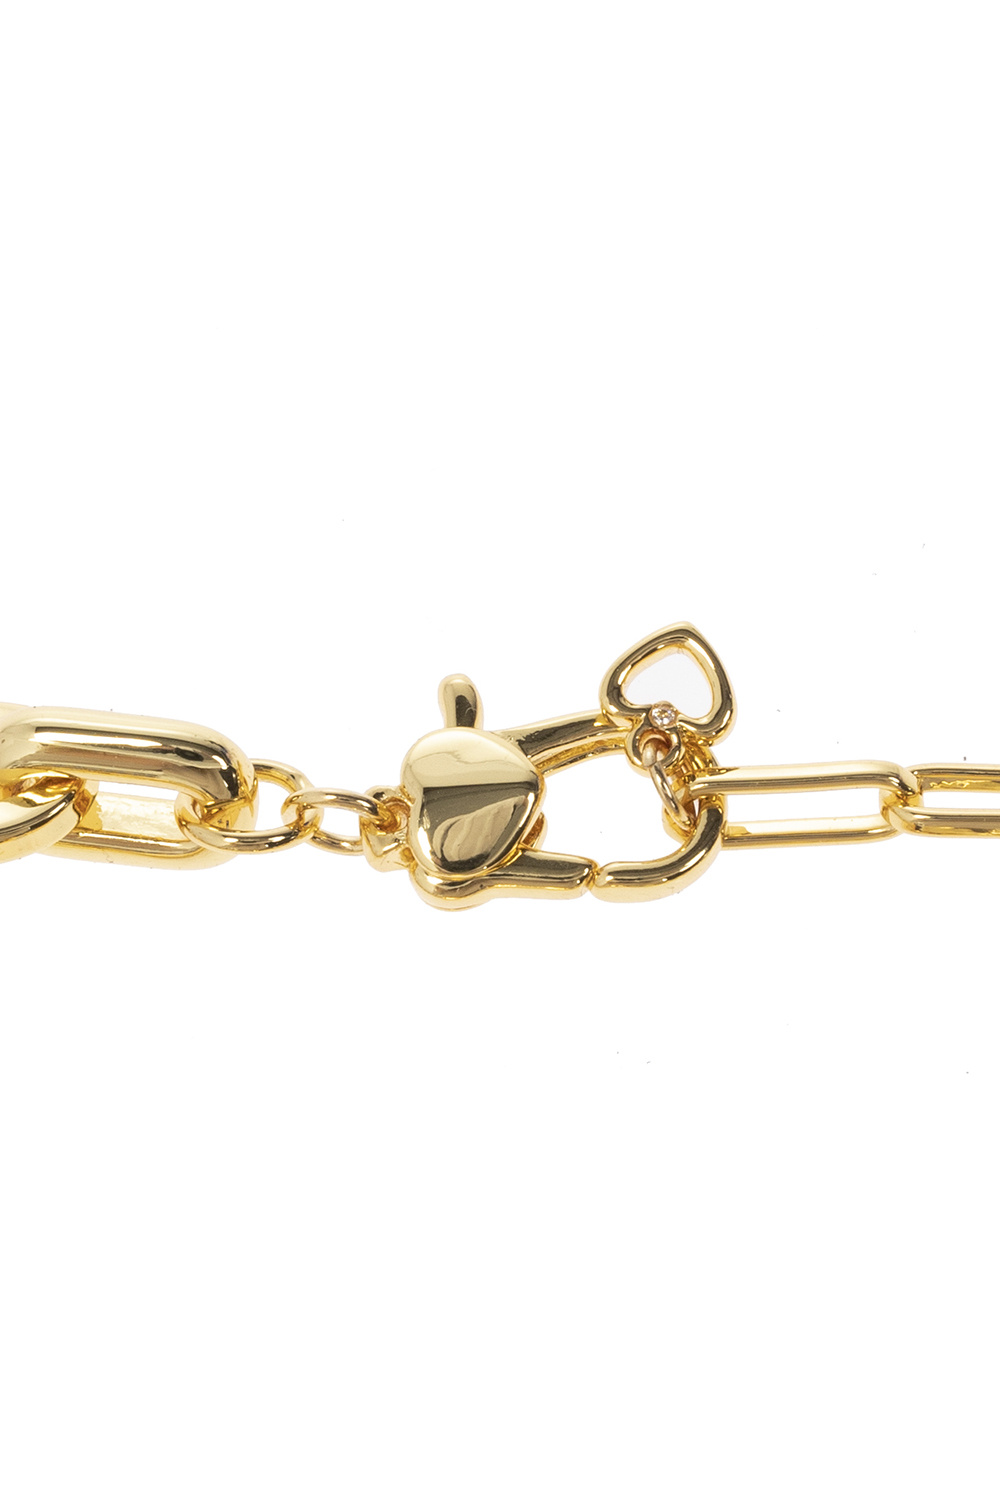 Gold Bracelet with logo Kate Spade - Vitkac France